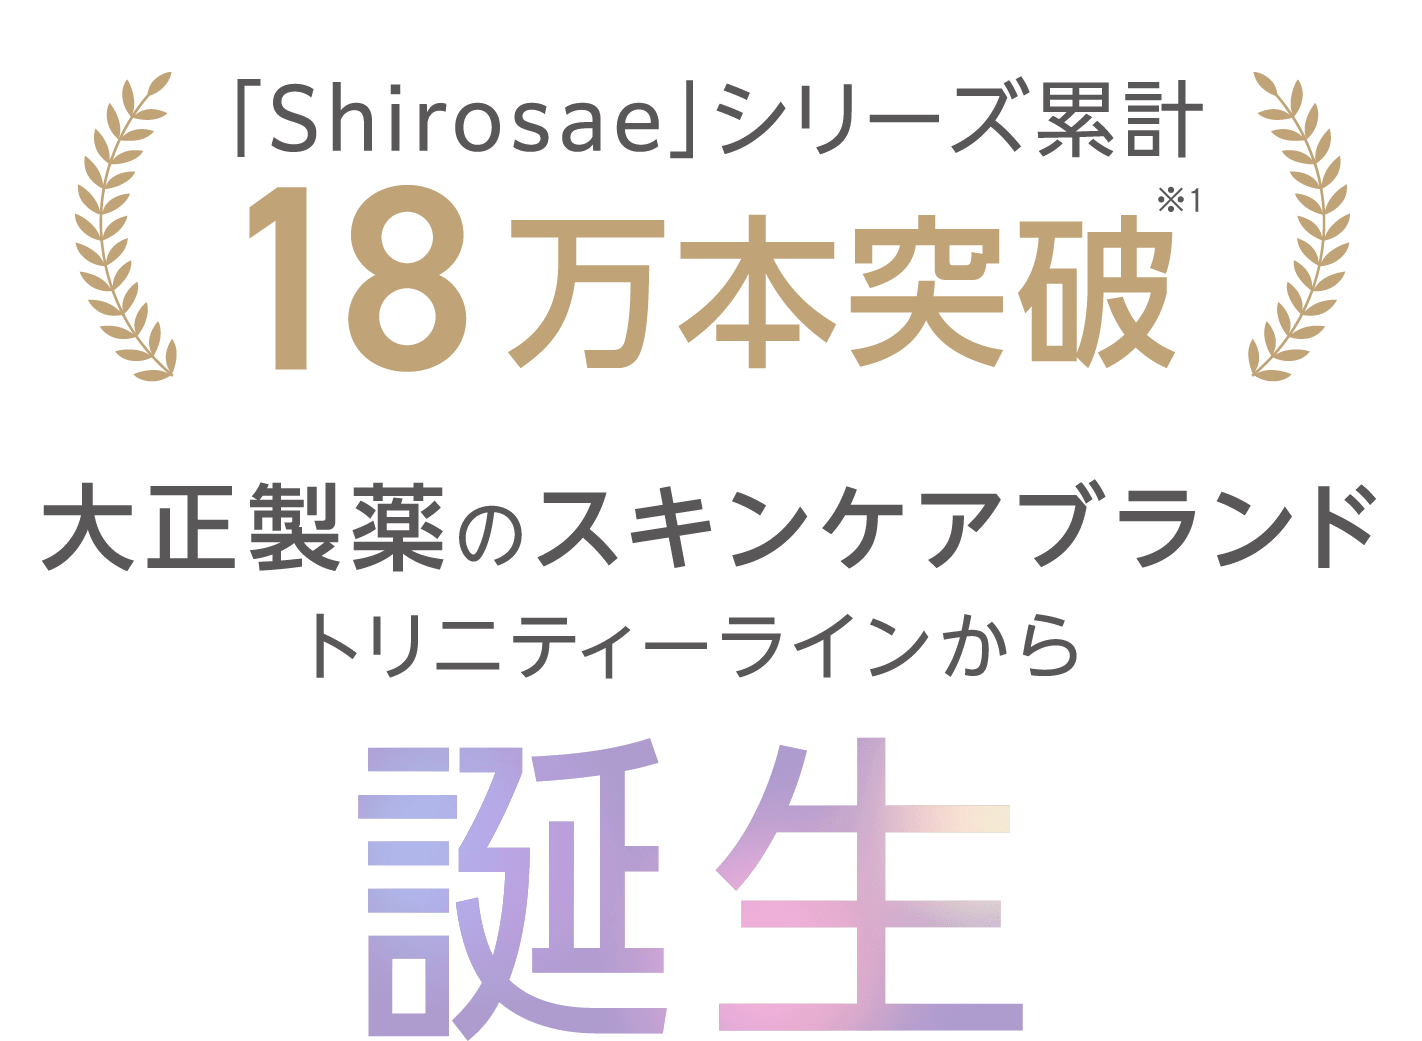 「Shirosae」シリーズ累計18万本突破